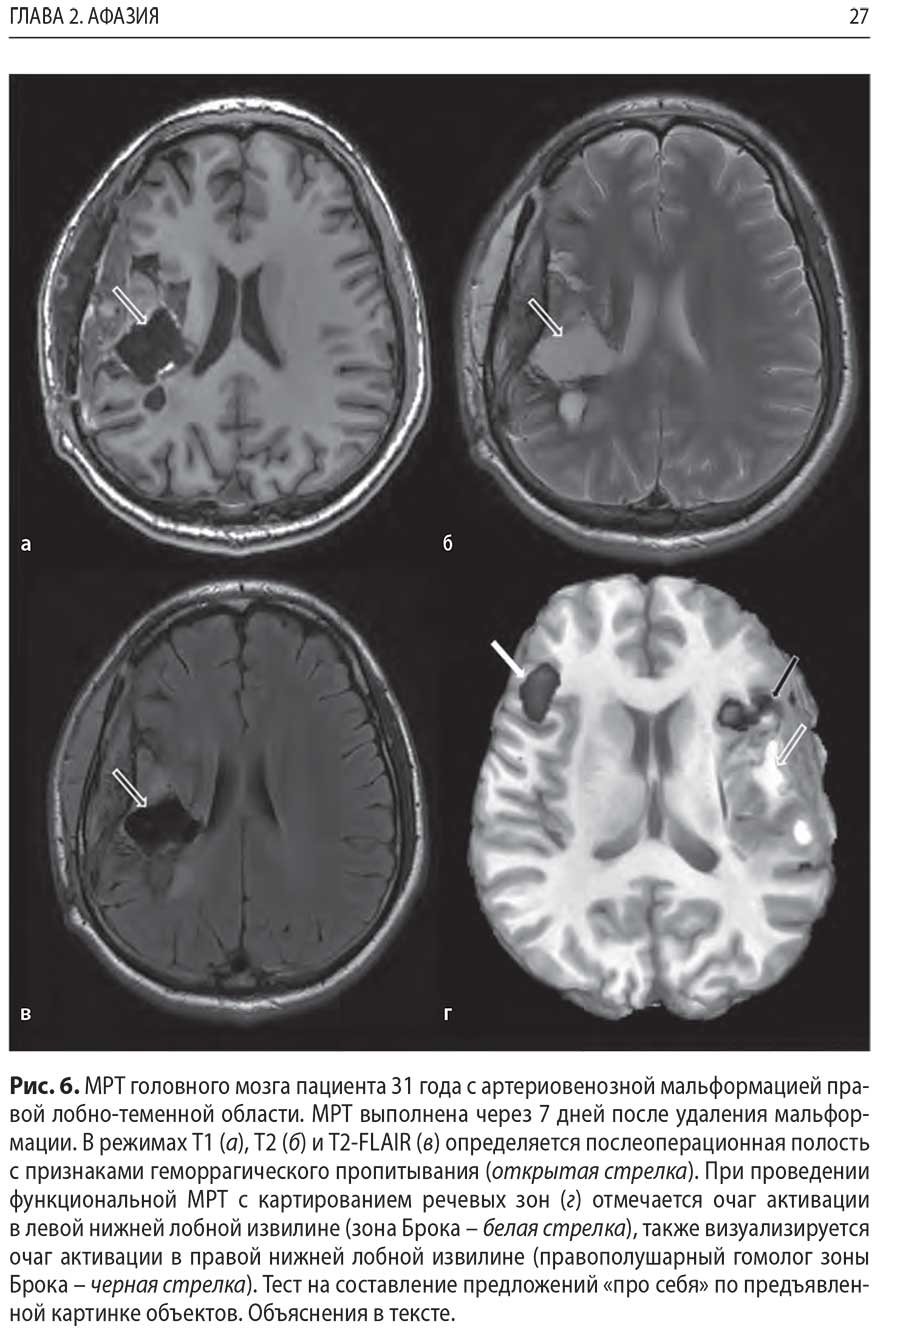 Рис. 6. MPT головного мозга пациента 31 года с артериовенозной мальформацией